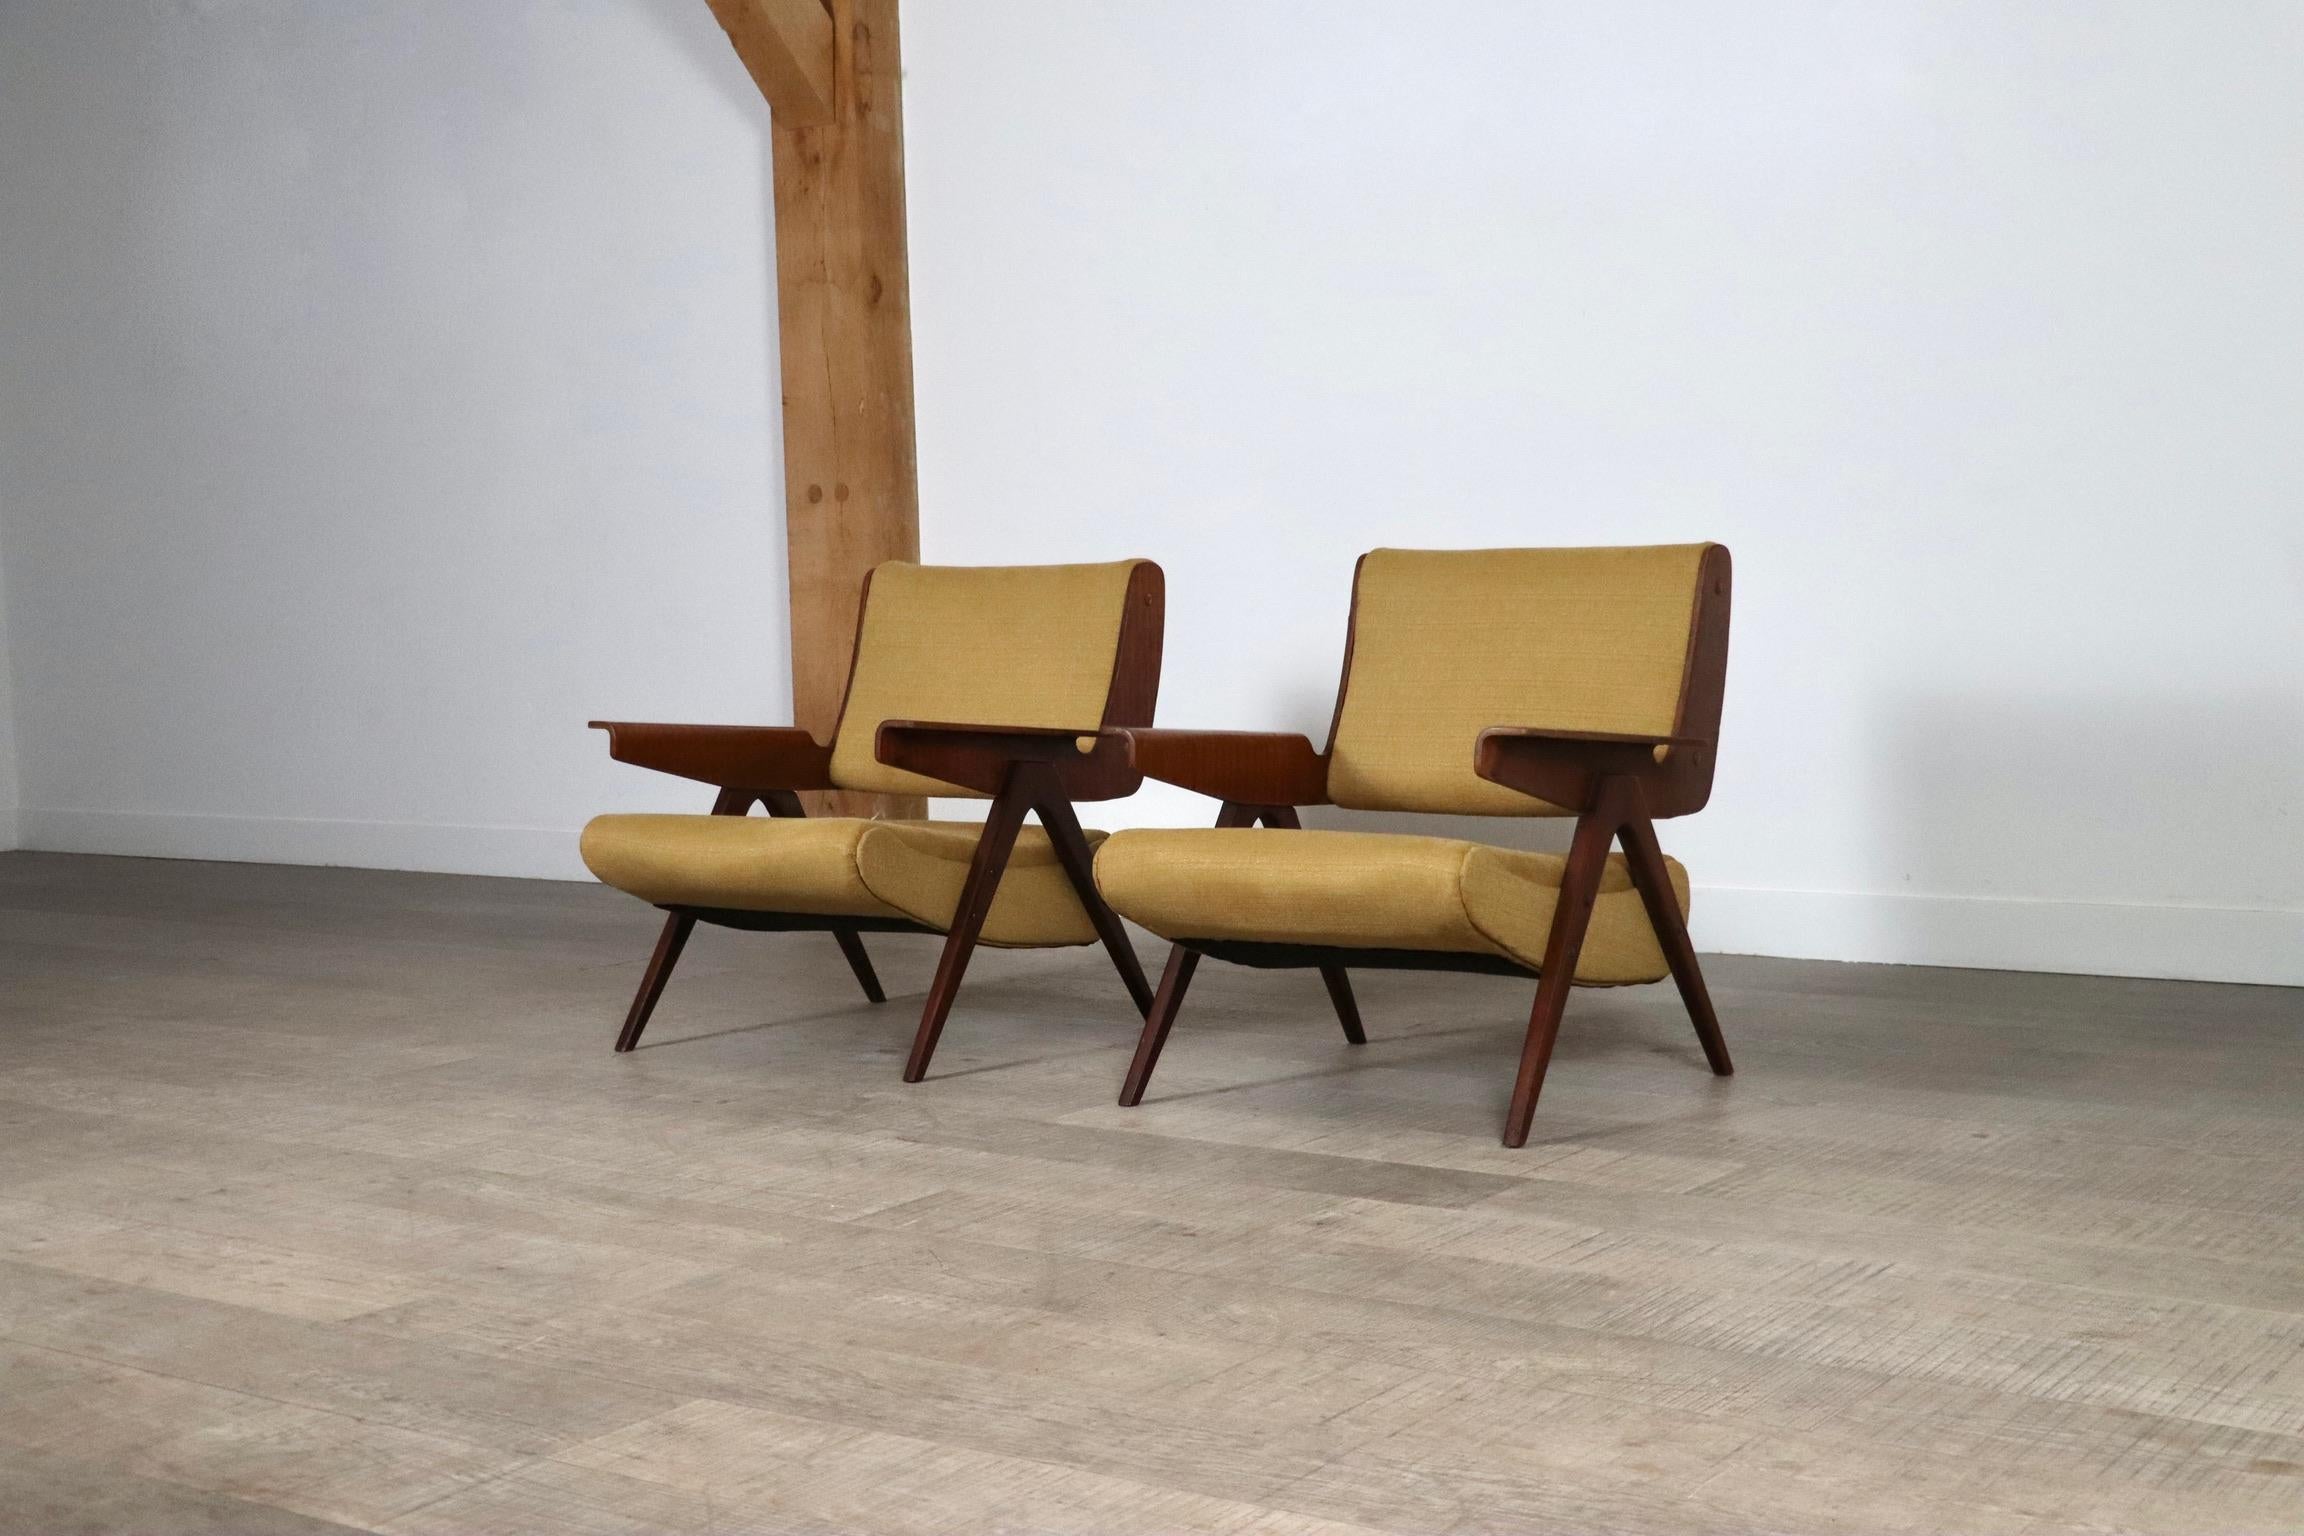 Unglaubliches Paar Stühle Modell 831 von Gianfranco Frattini für Cassina, 1950er Jahre. Diese Stuhlmodelle sind außergewöhnlich selten. Der fantastische Entwurf des renommierten italienischen Designers Gianfranco Frattini zeigt seine ikonischen